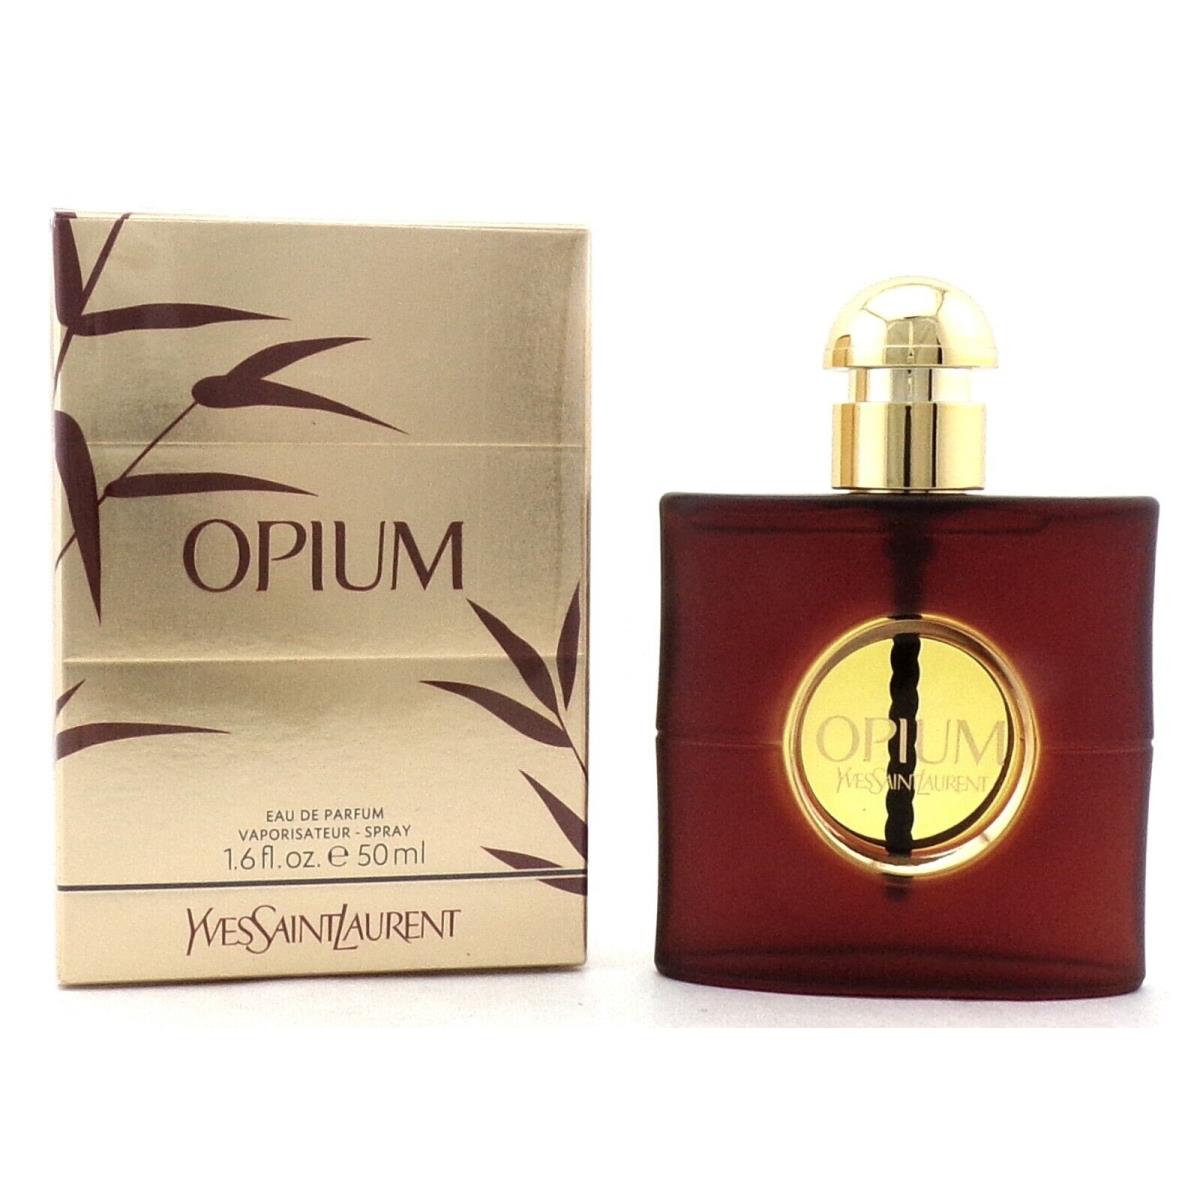 Opium by Yves Saint Laurent 1.6 oz Eau de Parfum Spray For Women. Box